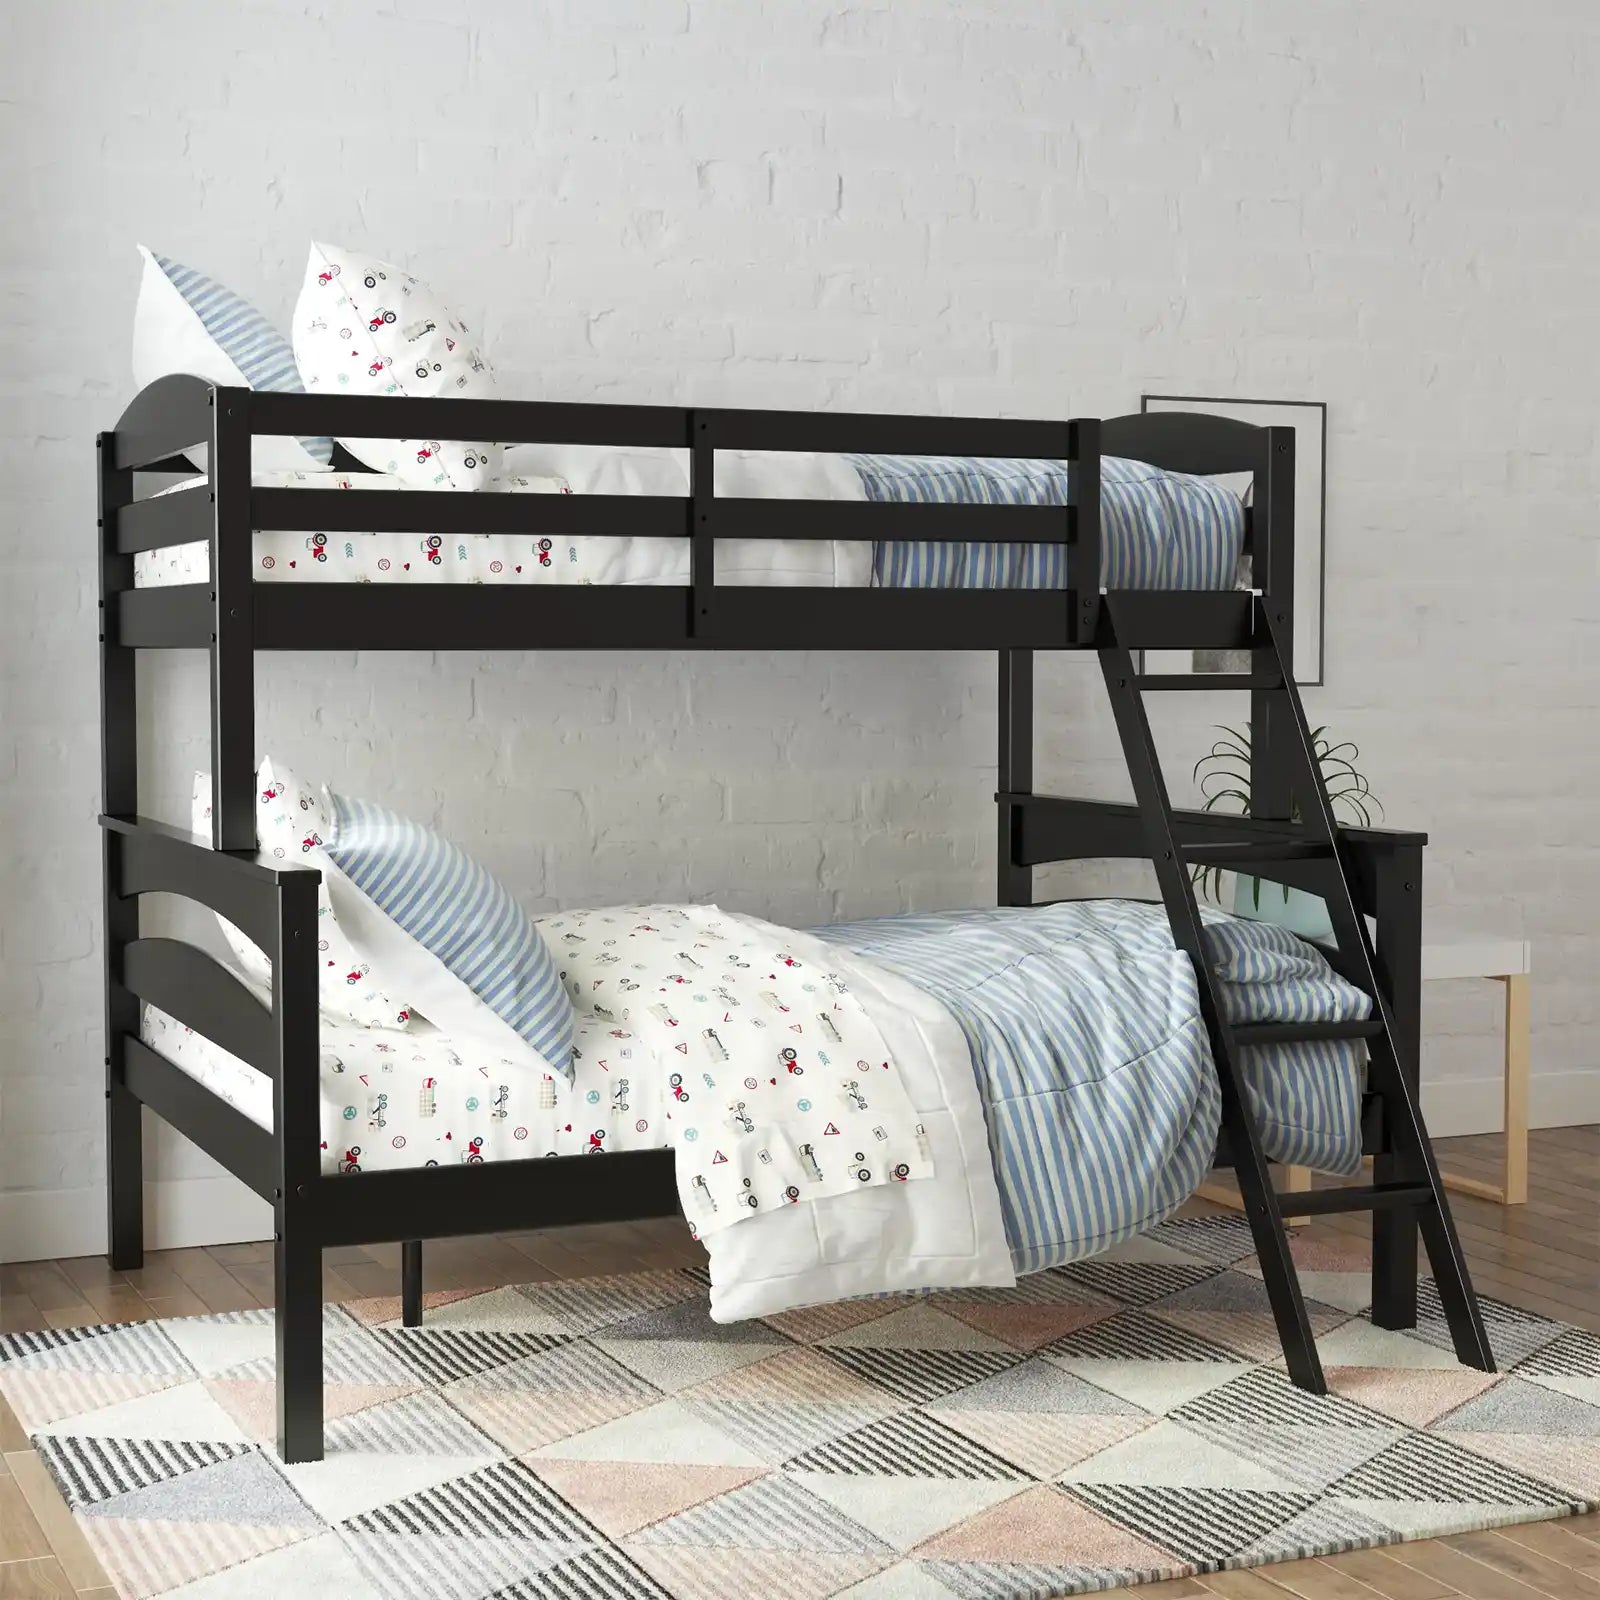 Litera de madera con dos camas individuales y cama completa